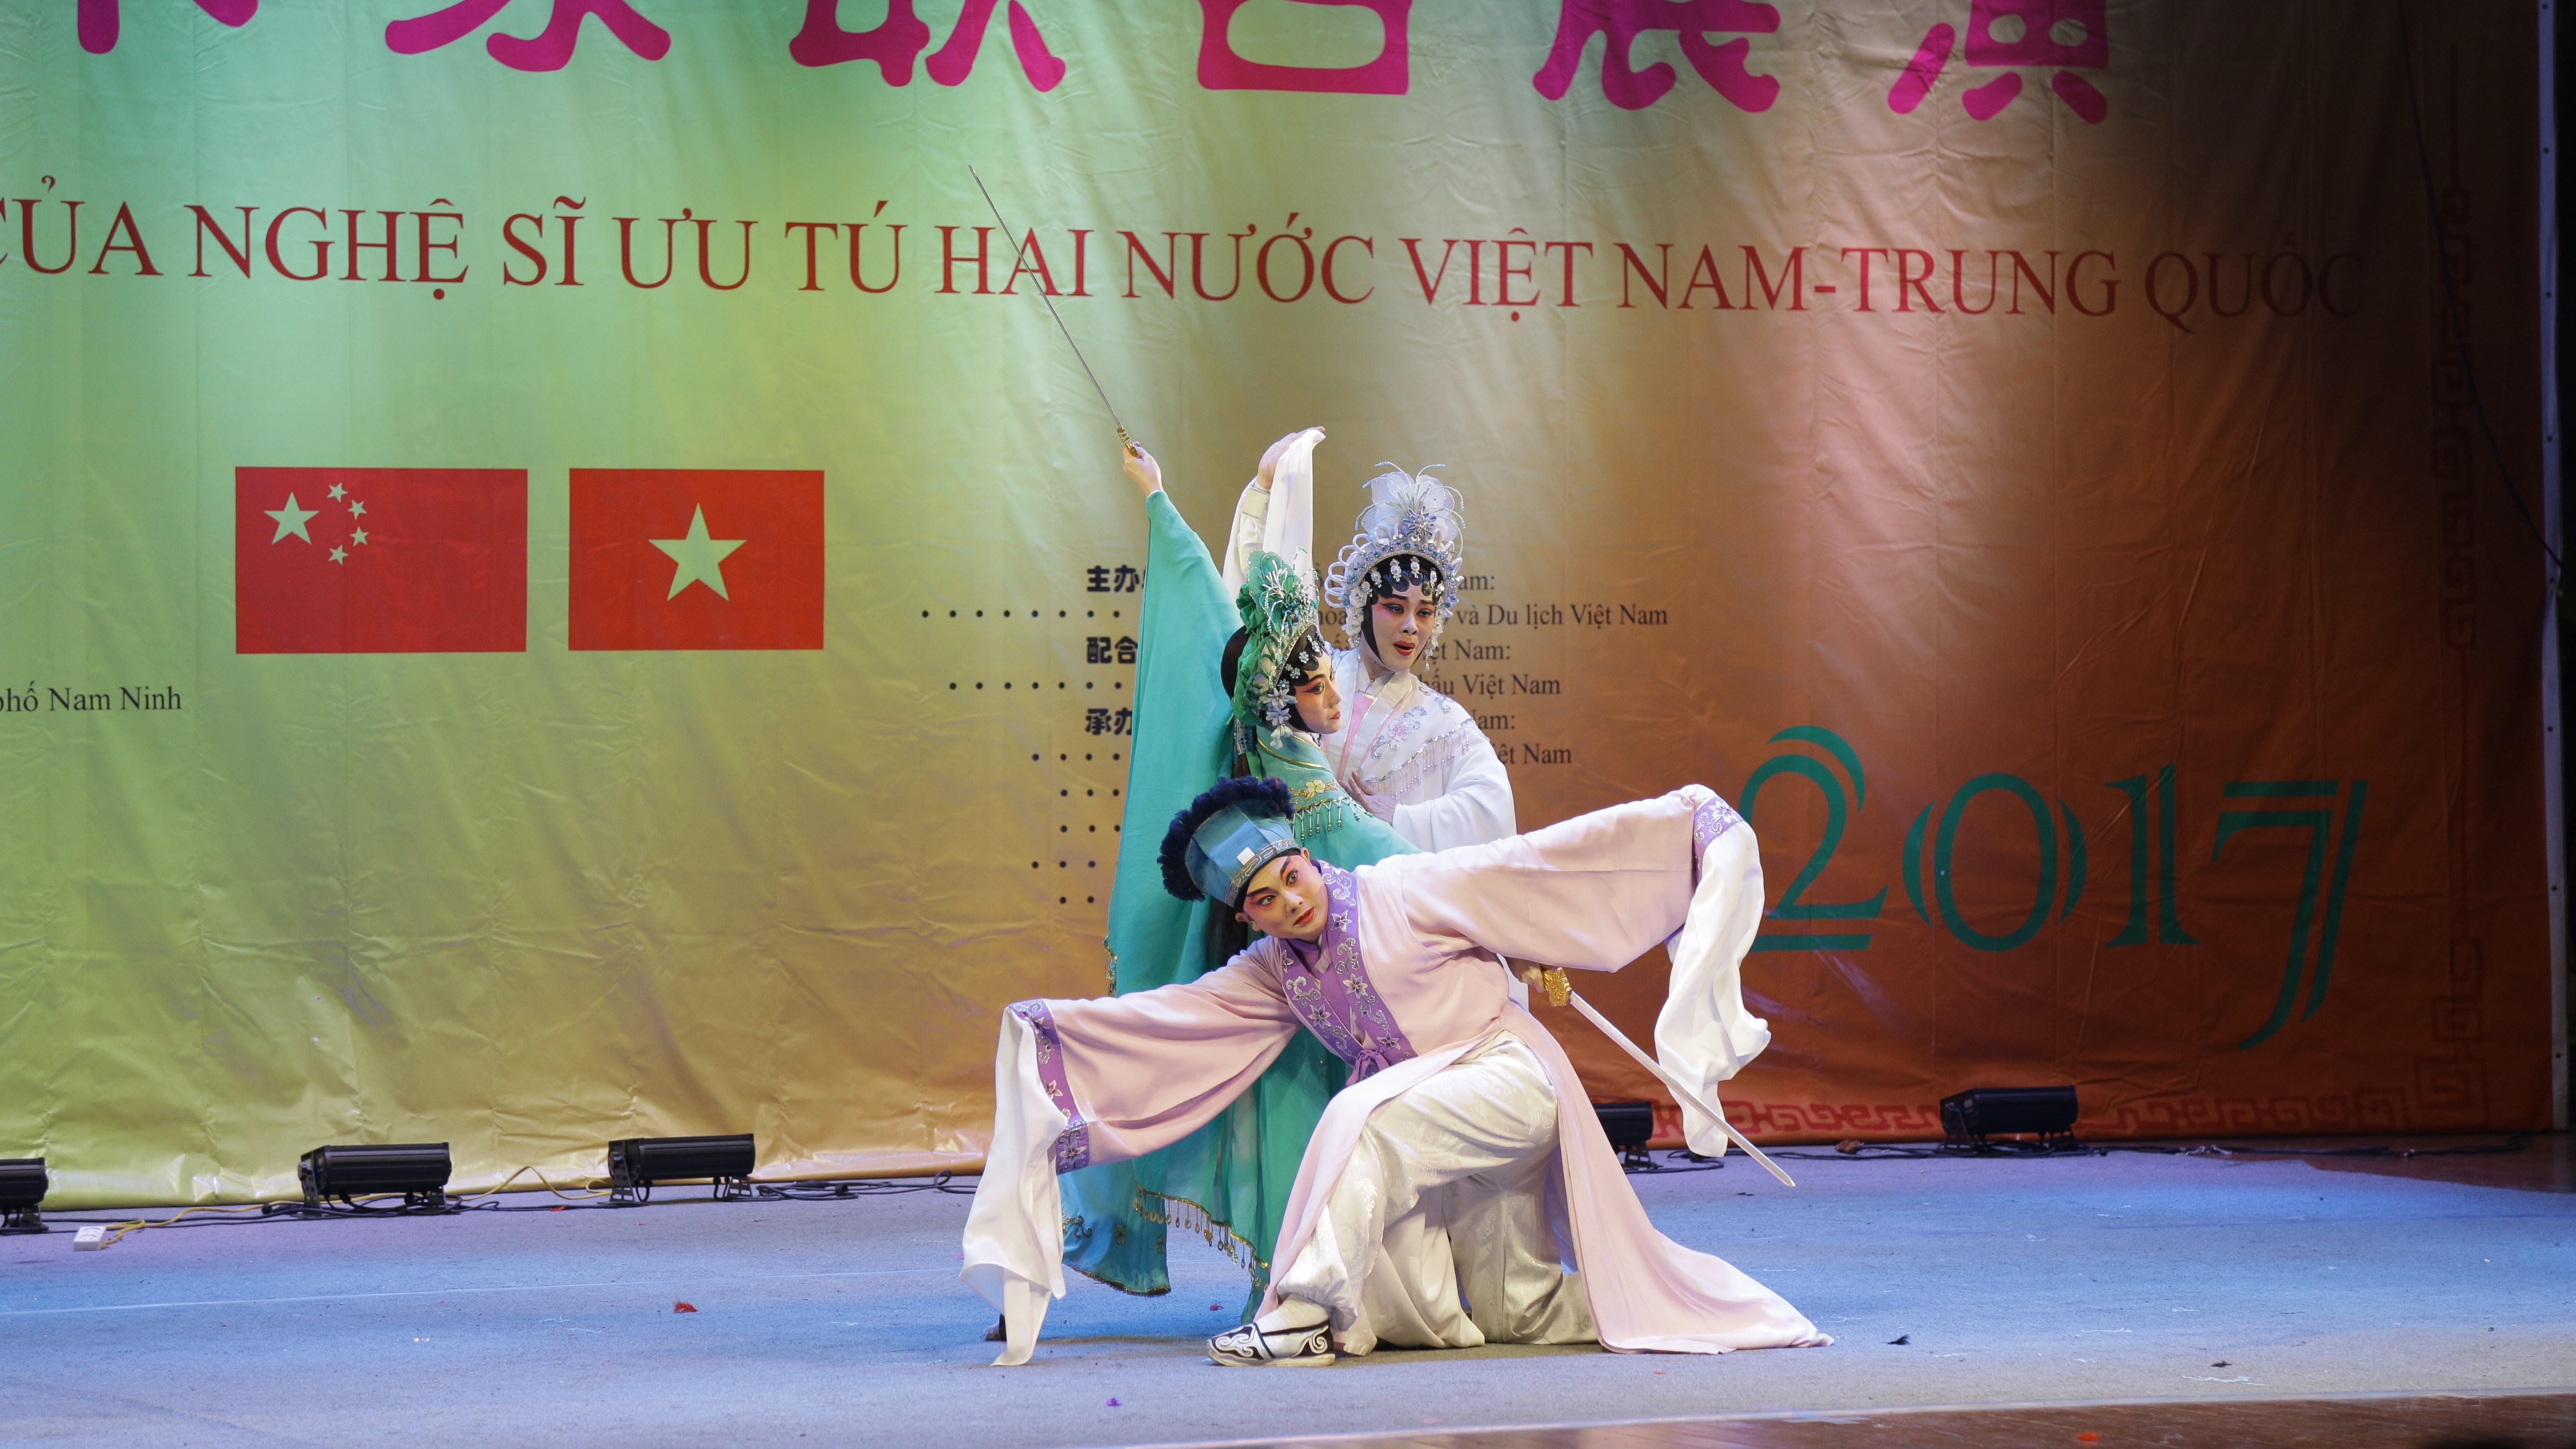 Giao lưu văn hóa kết nối tình hữu nghị Việt Nam - Trung Quốc